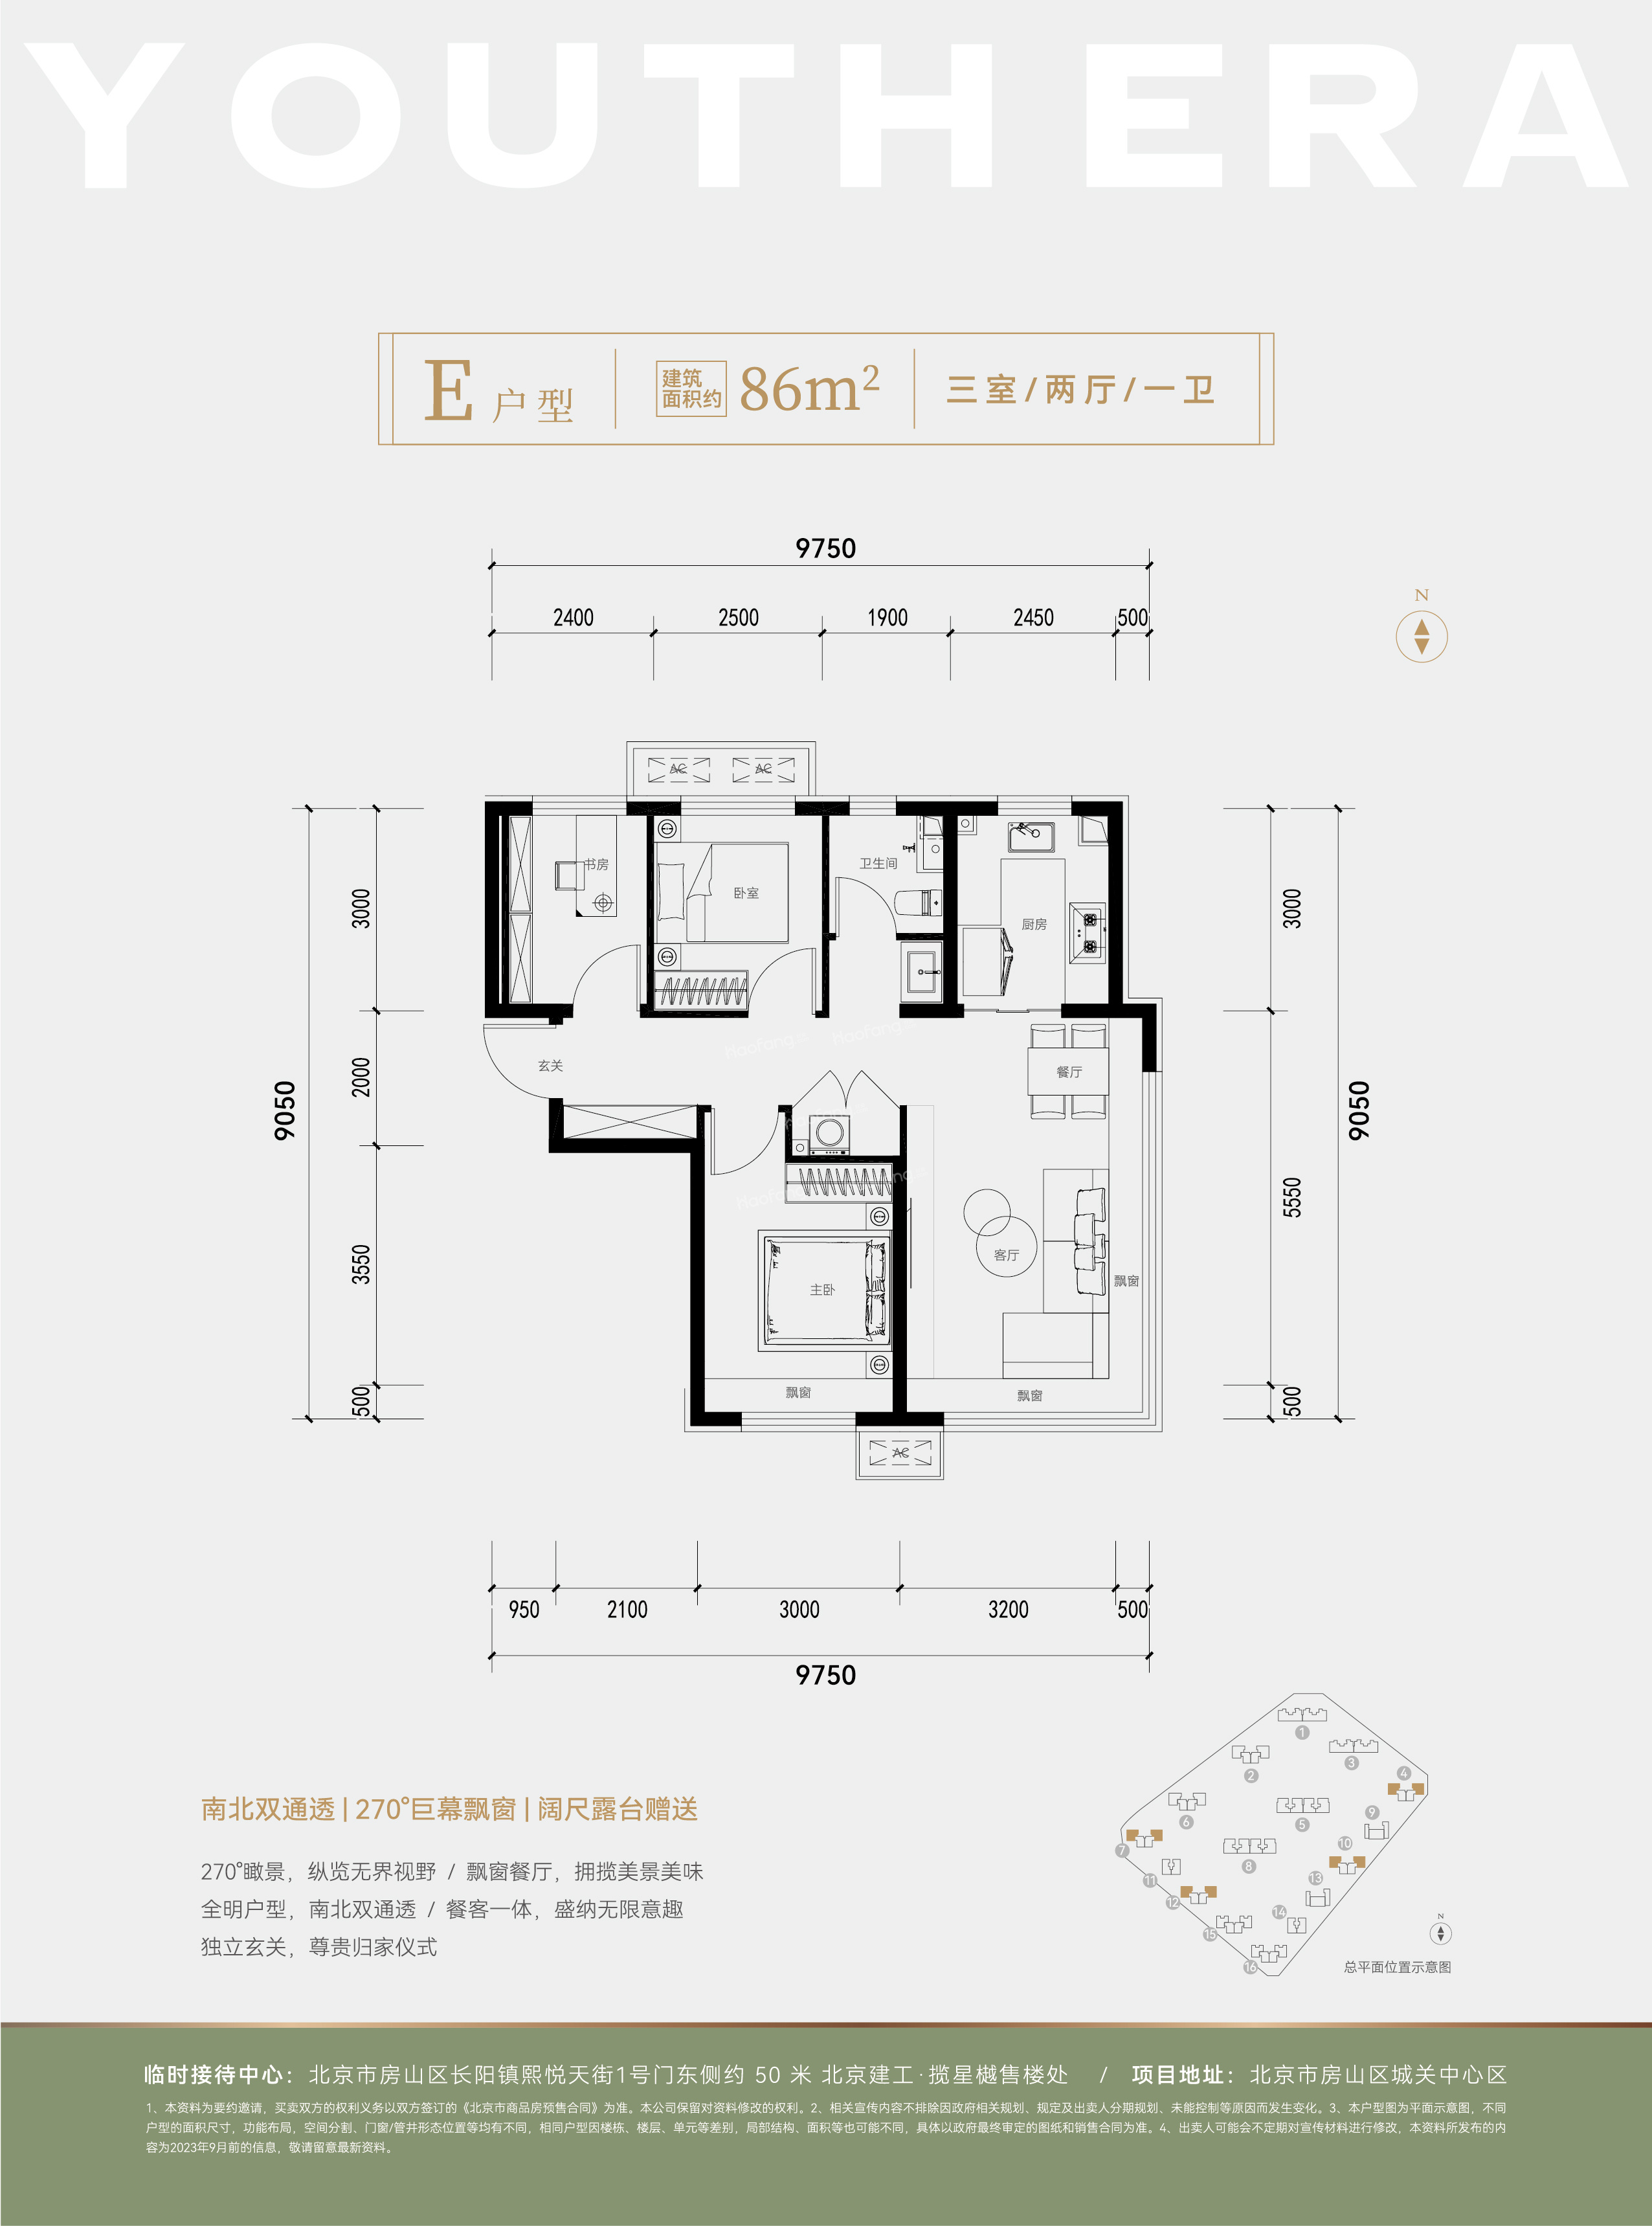 北京建工揽星樾4室3厅1卫